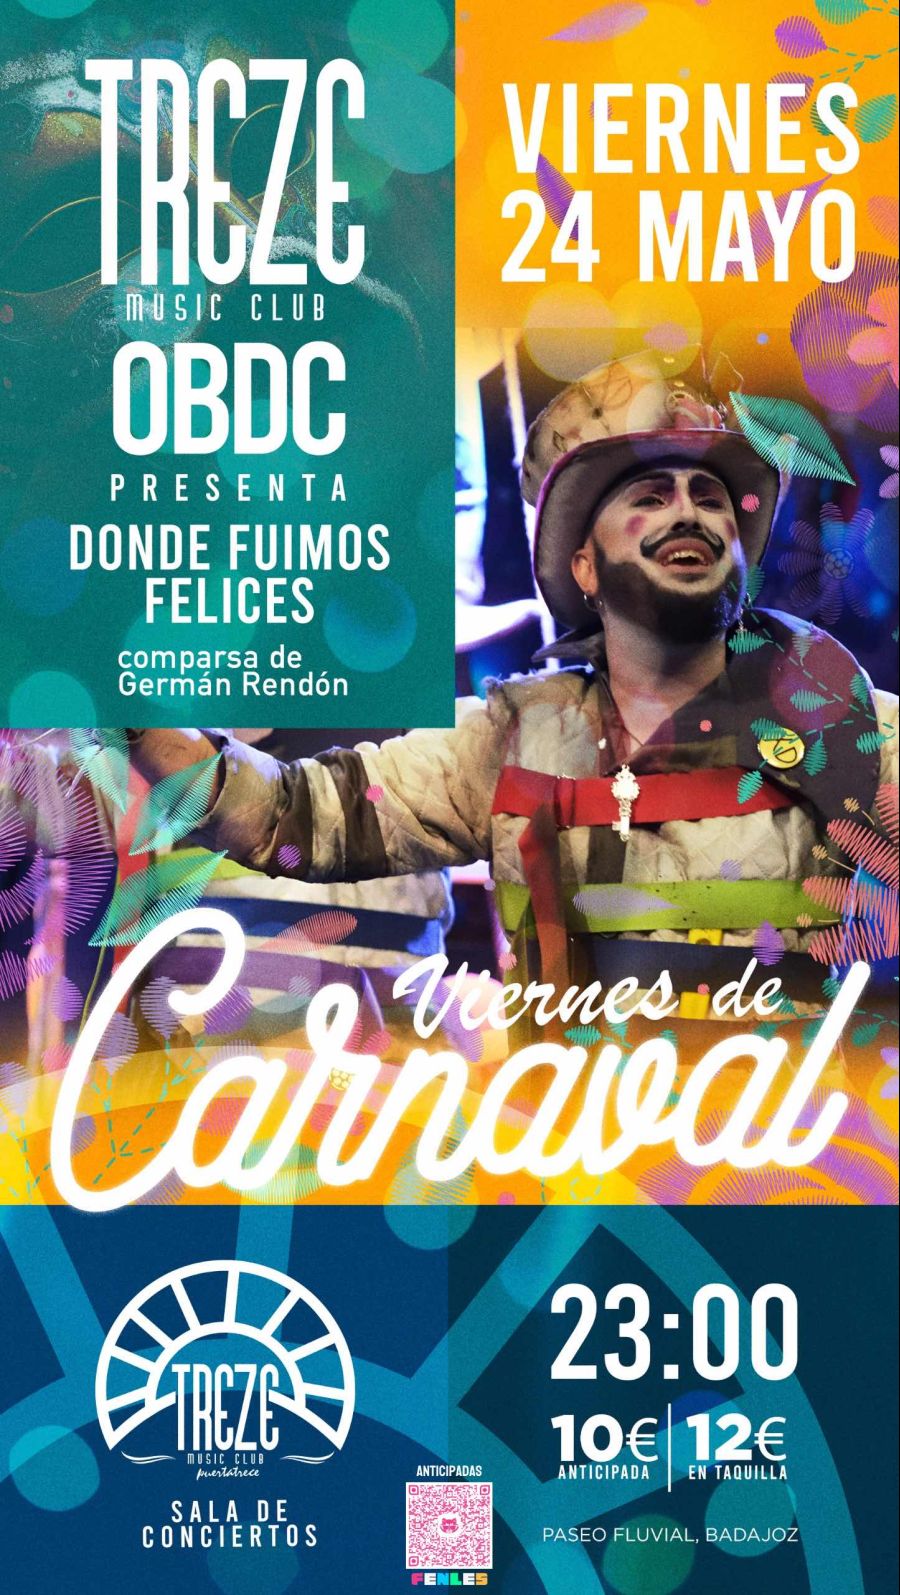 OBDC PRESENTA - DONDE FUIMOS FELICES EN TREZE MUSIC CLUB